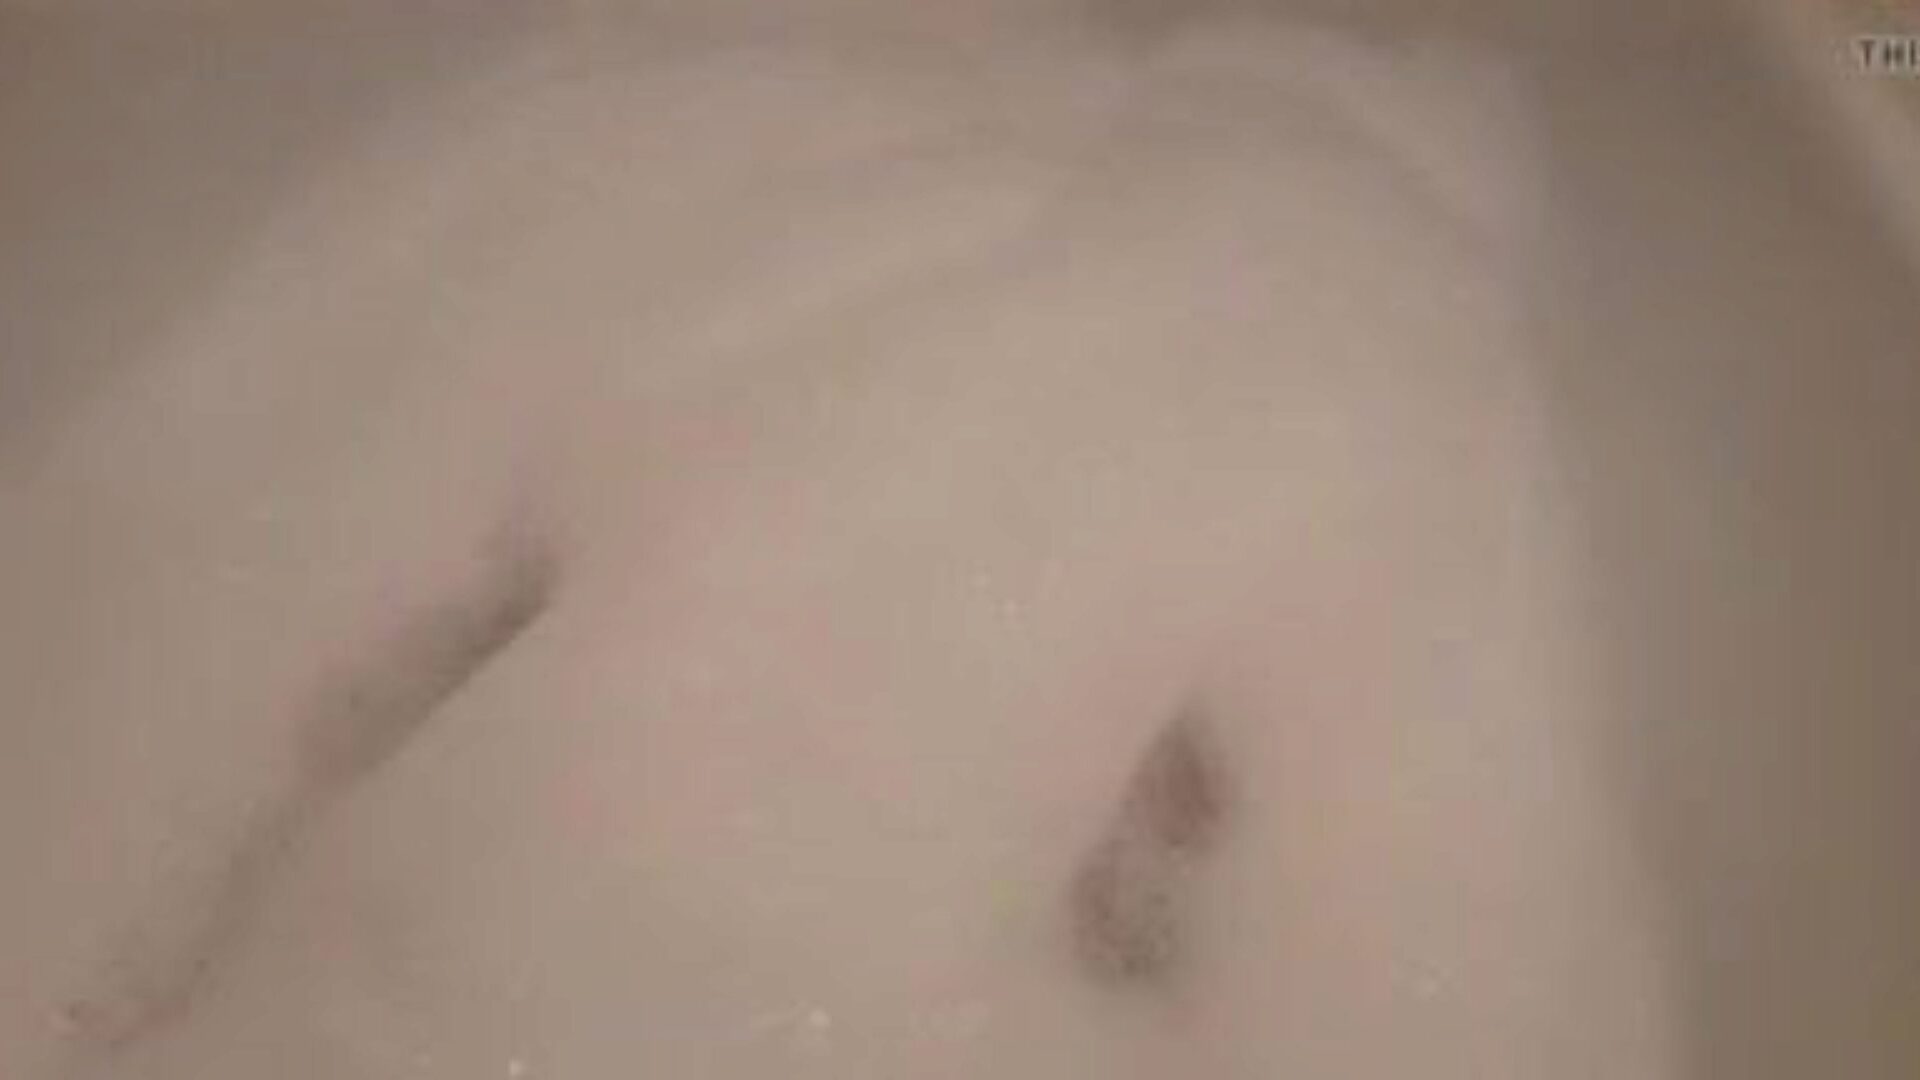 linda bath2: vídeo pornô de buceta apertada grátis 10 - xhamster assista ao vídeo de linda bath2 tube fuckfest gratuitamente no xhamster, com a coleção mais sexy de buceta apertada alemã, água e sessenta e nove vinhetas de vídeo pornô